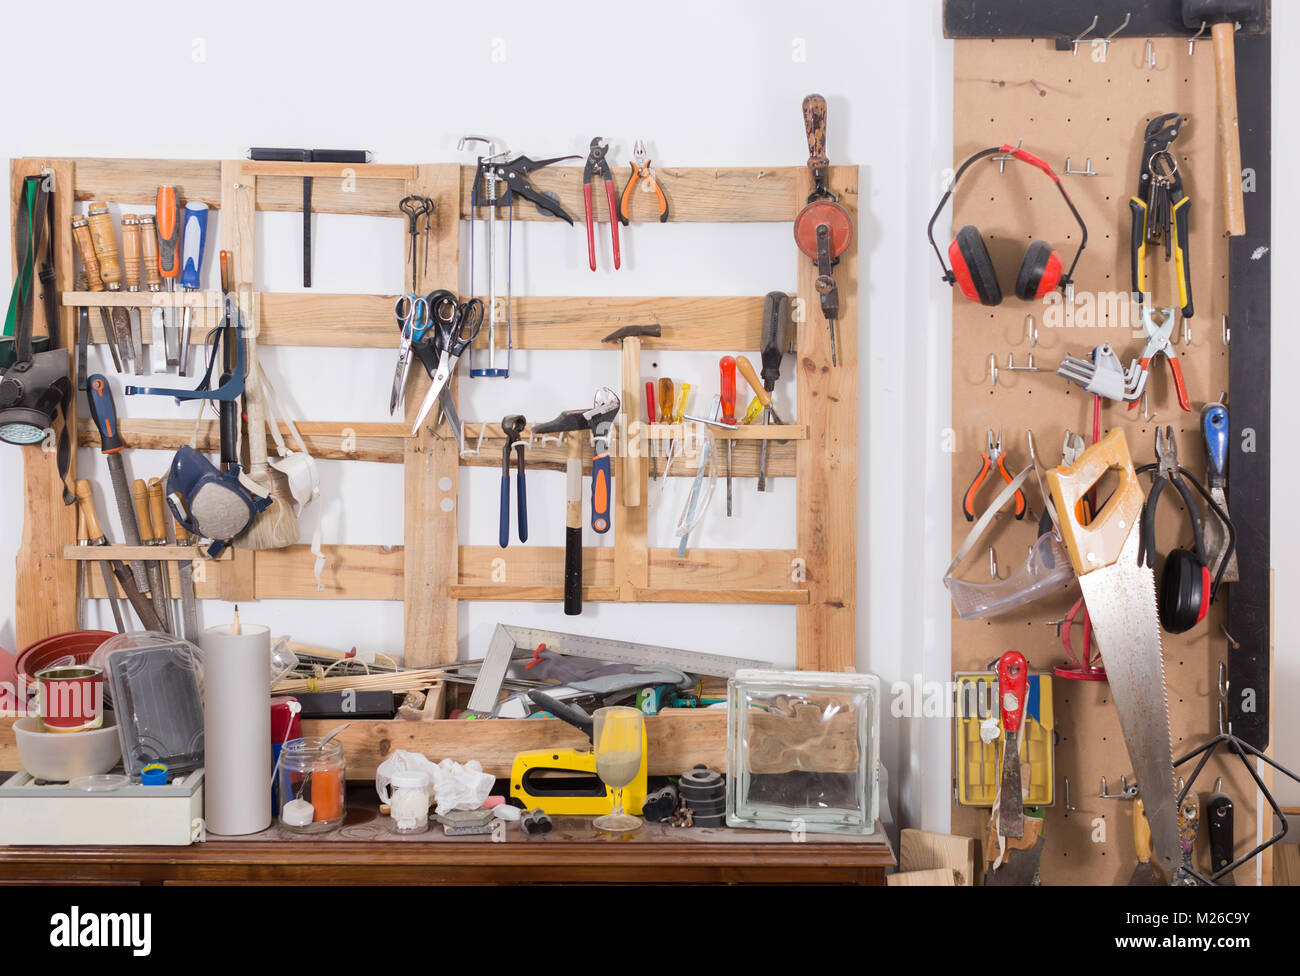 Alte Werkzeuge aufhängen an Wand in der Werkstatt, Werkzeug Regal gegen  eine Wand in einer Garage Stockfotografie - Alamy